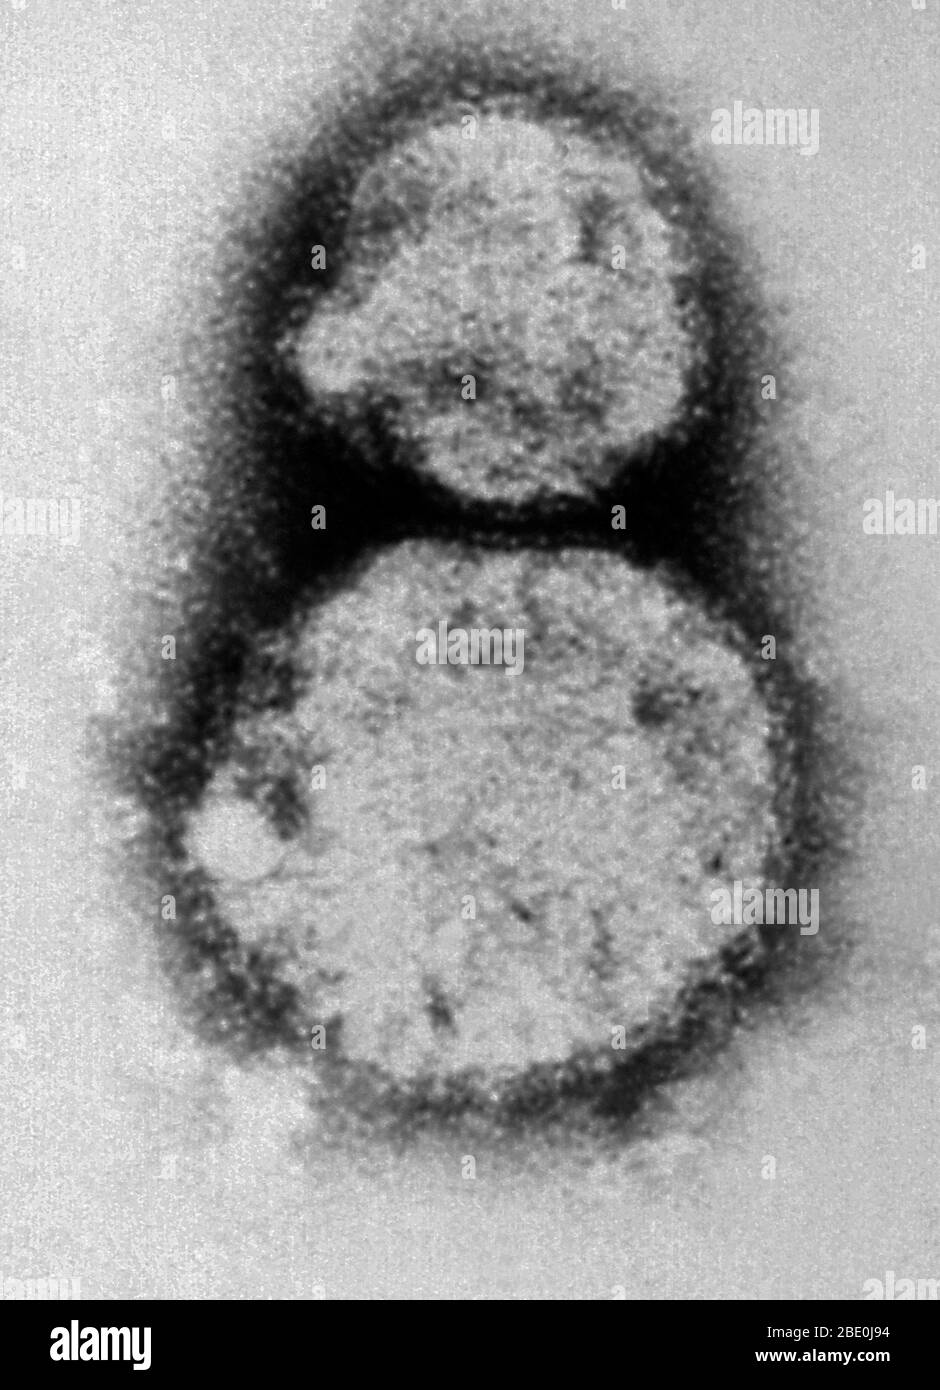 Negativ-gefärbte Transmission Electron Micrograph (TEM) zeigt die Sin nombre Virus (SNV) Virionen, die Mitglieder der Gattung Hantavirus sind, innerhalb der Familie Bunyaviridae. Das Sin nombre-Virus ist die Ursache für das Hantavirus-Herz-Lungen-Syndrom (HCPS), auch als Hantavirus-Lungensyndrom (HPS) bezeichnet, beim Menschen. Im November 1993 wurde das spezifische Hantavirus, das den Ausbruch der vier Ecken verursachte, isoliert. Mit Hilfe von Gewebe einer Hirschmaus, die in der Nähe des Wohnsitzes einer Person, die die Krankheit bekommen hatte, gefangen war, züchtete die Abteilung für Spezialpathogene in CDC das Virus im Labor Stockfoto